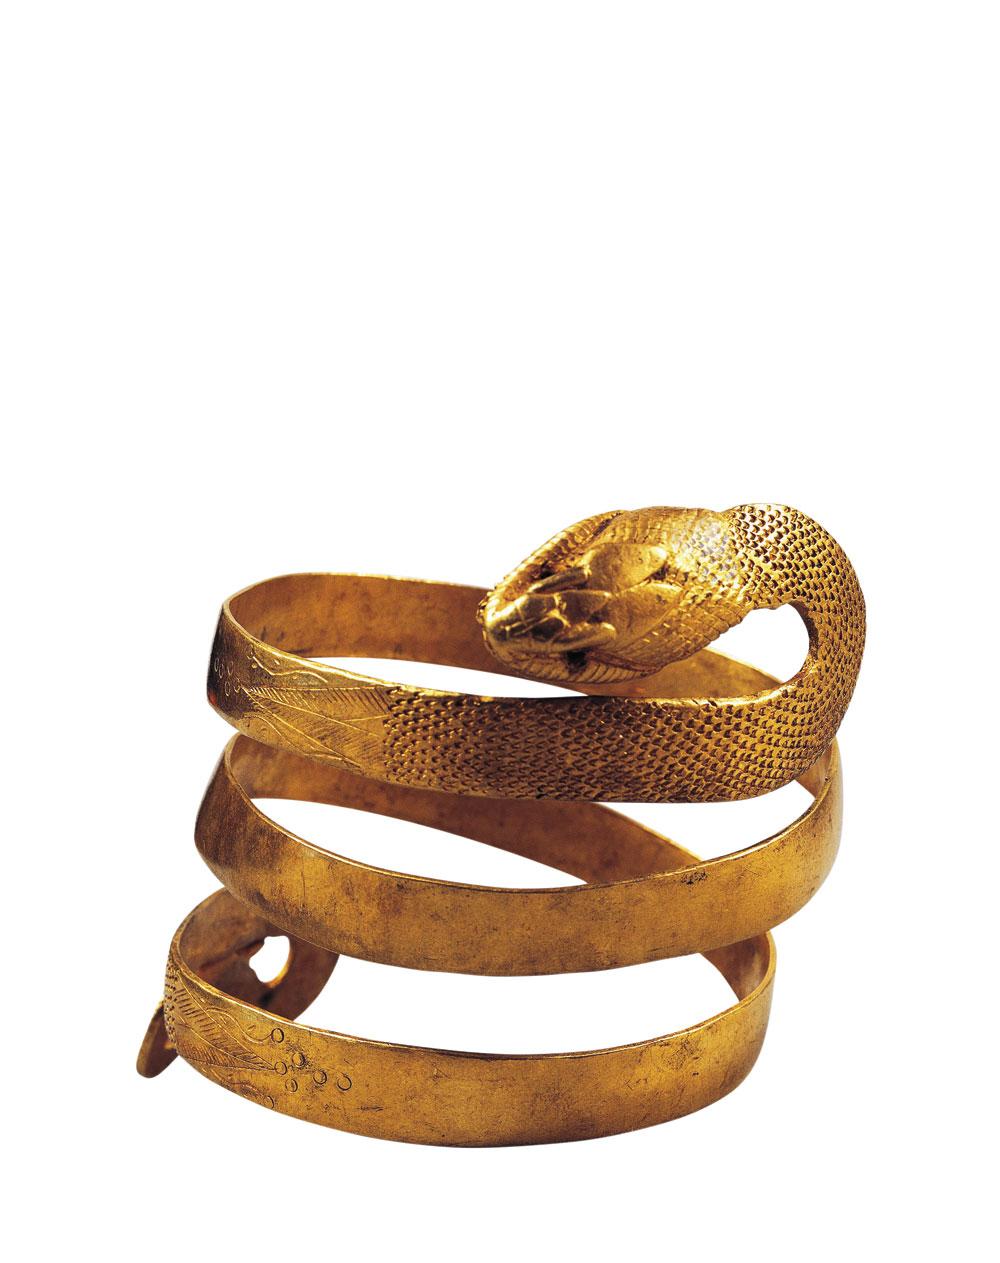 Un superbe bracelet en or en forme de serpent.